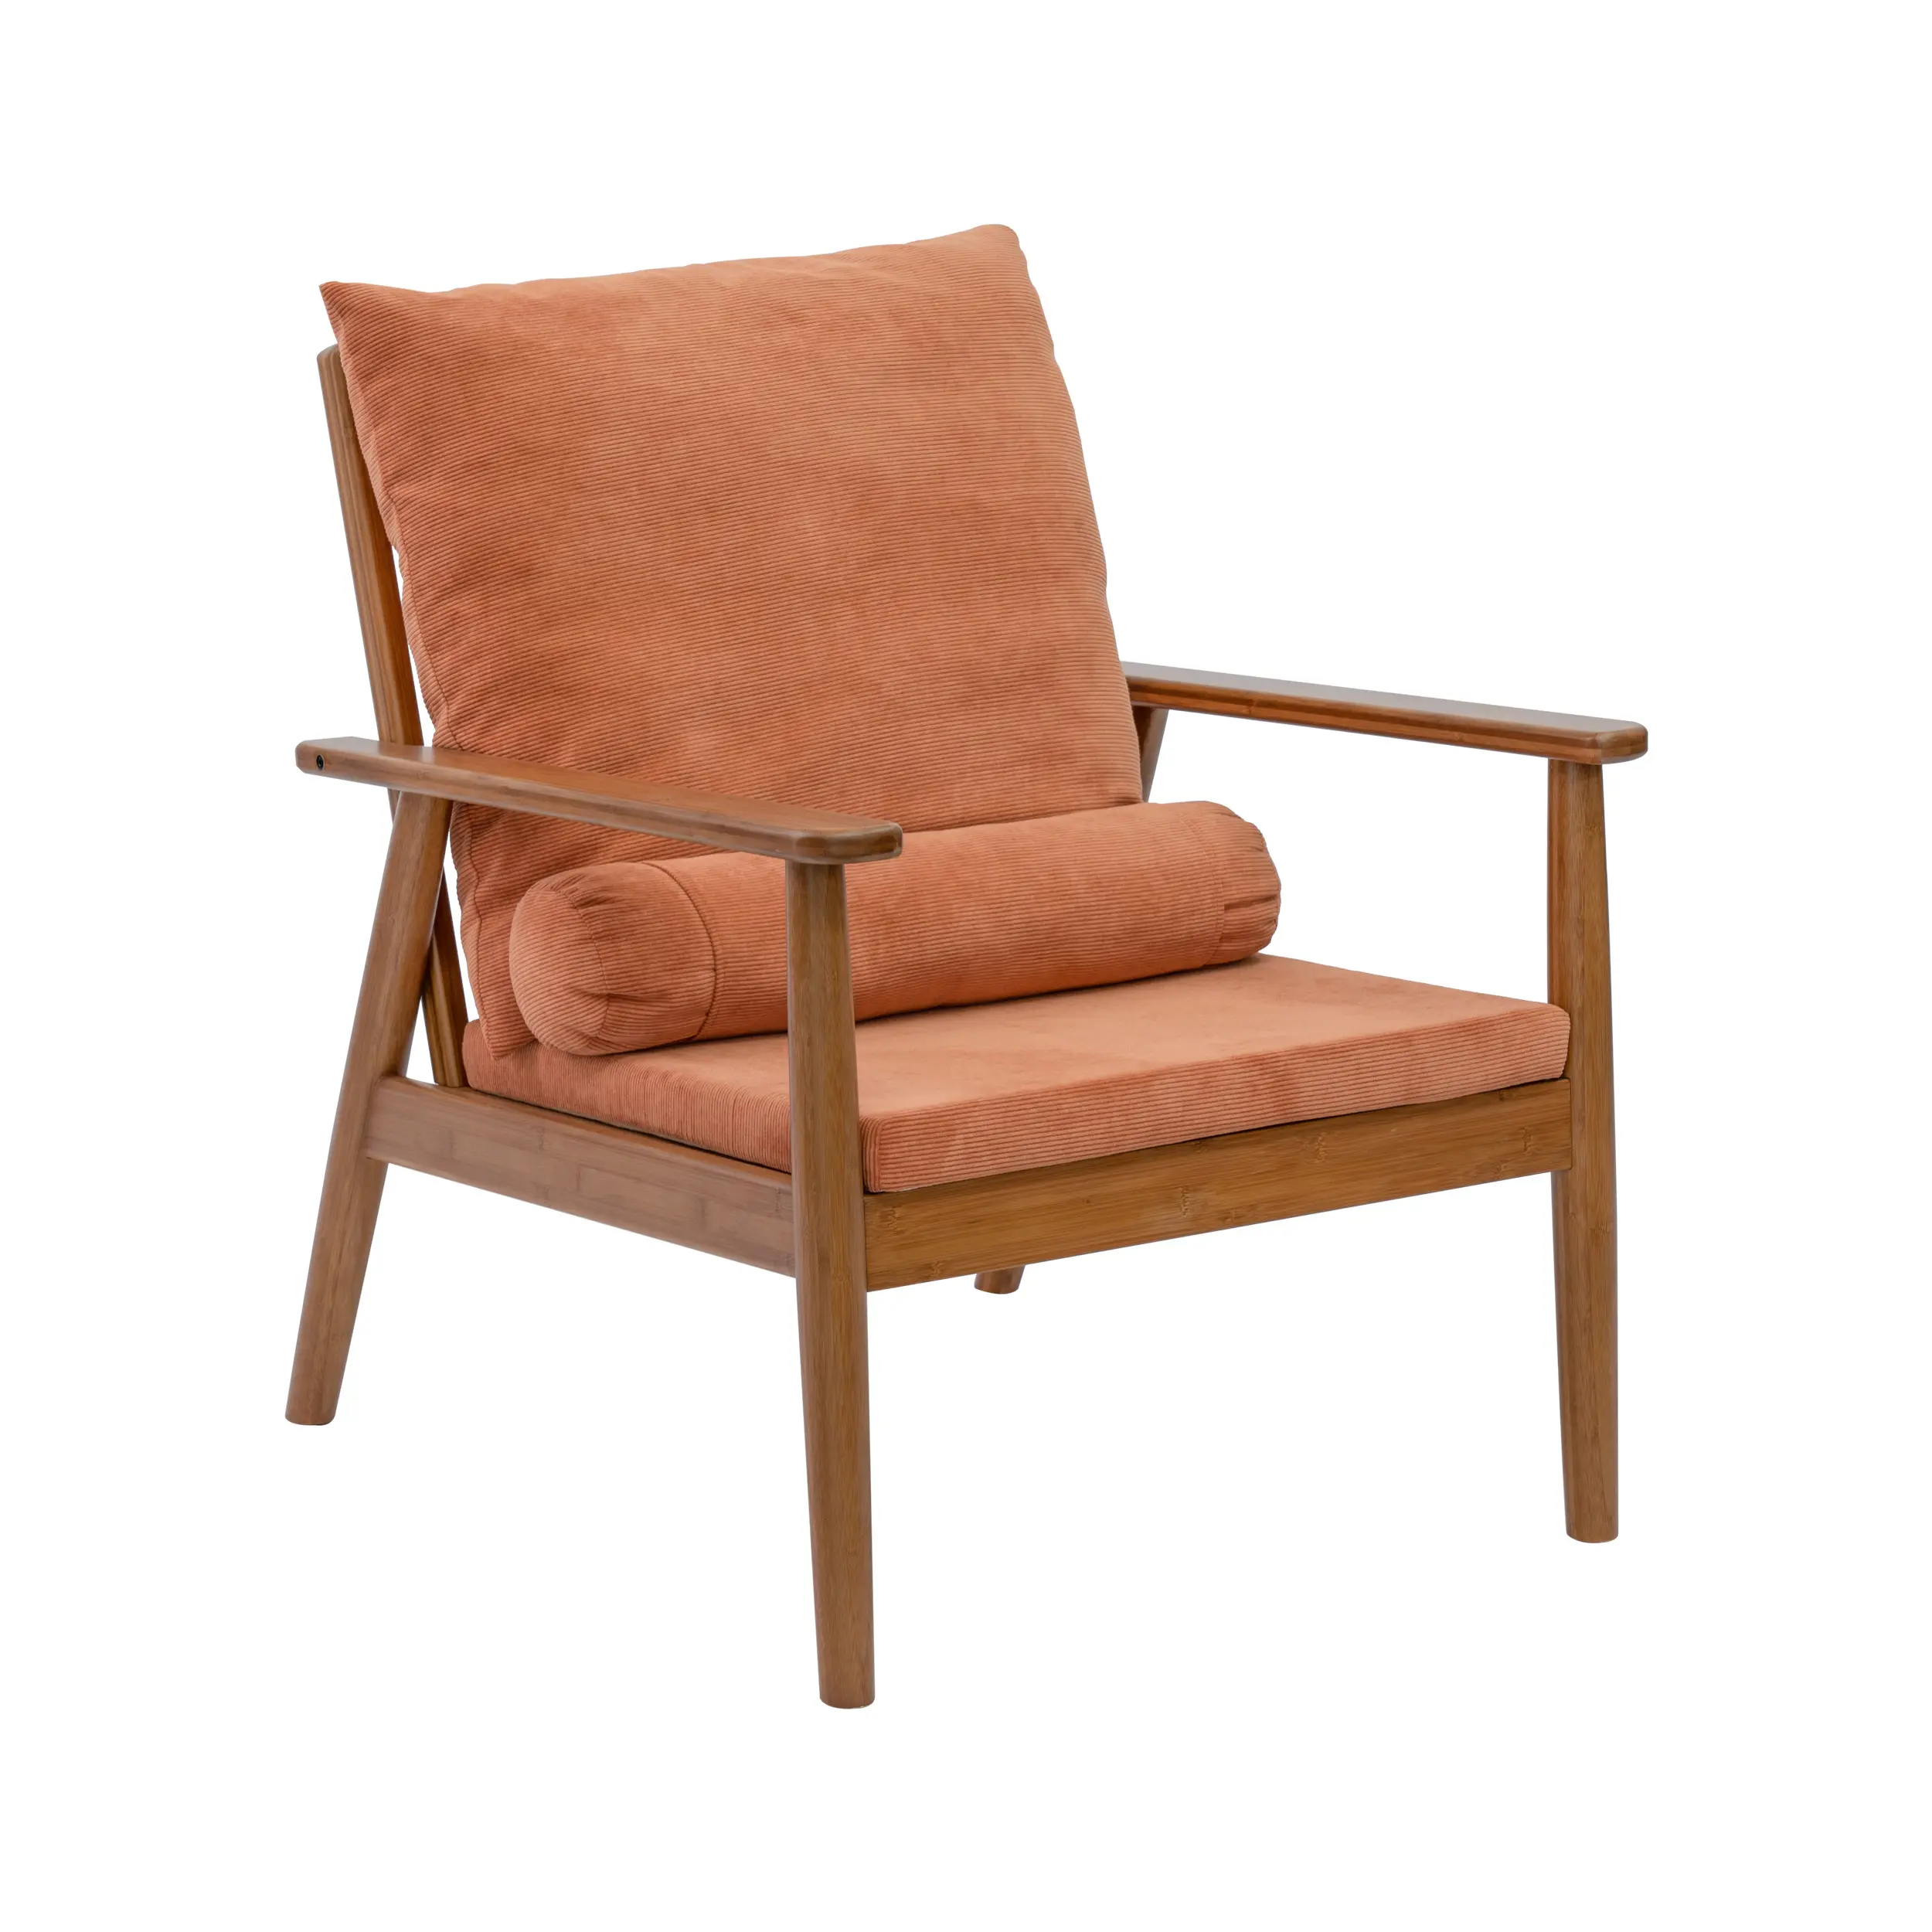 AiLiKEA VENDA QUENTE OEM e ODM Cadeiras de sala de estar estilo nórdico personalizadas com estrutura de bambu natural minimalista